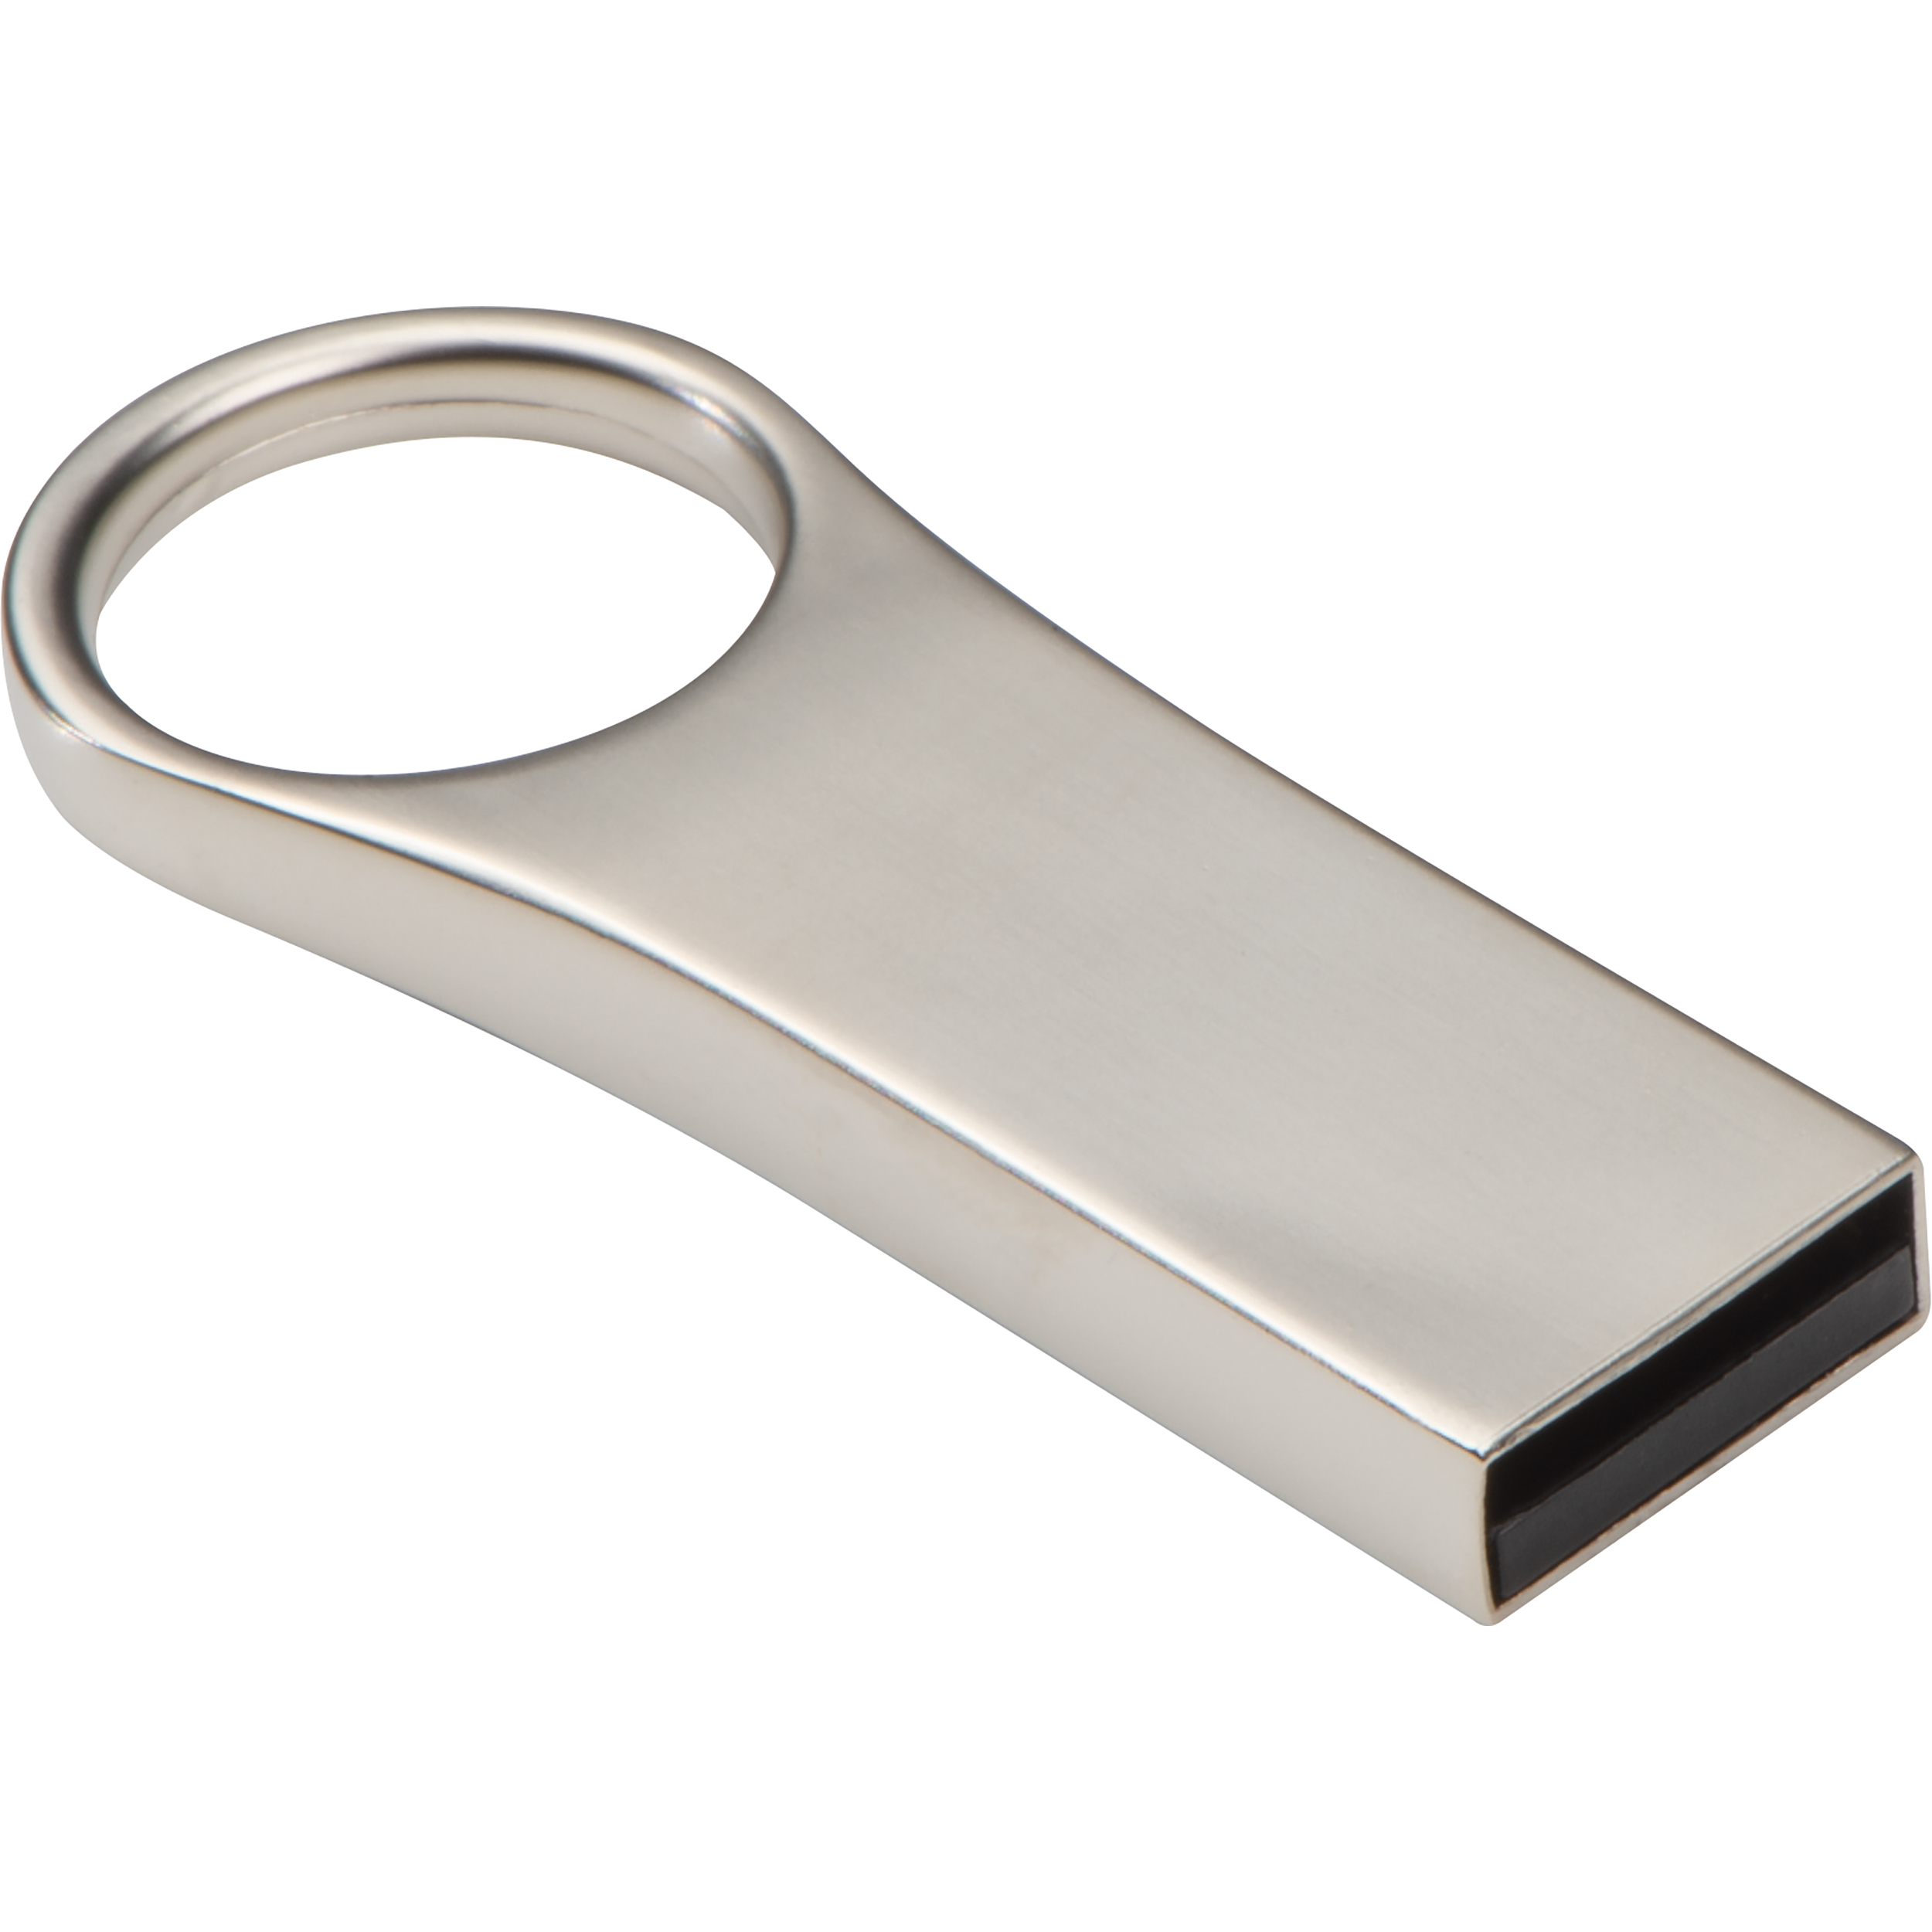 Chiavetta USB in metallo, capacità 8 GB